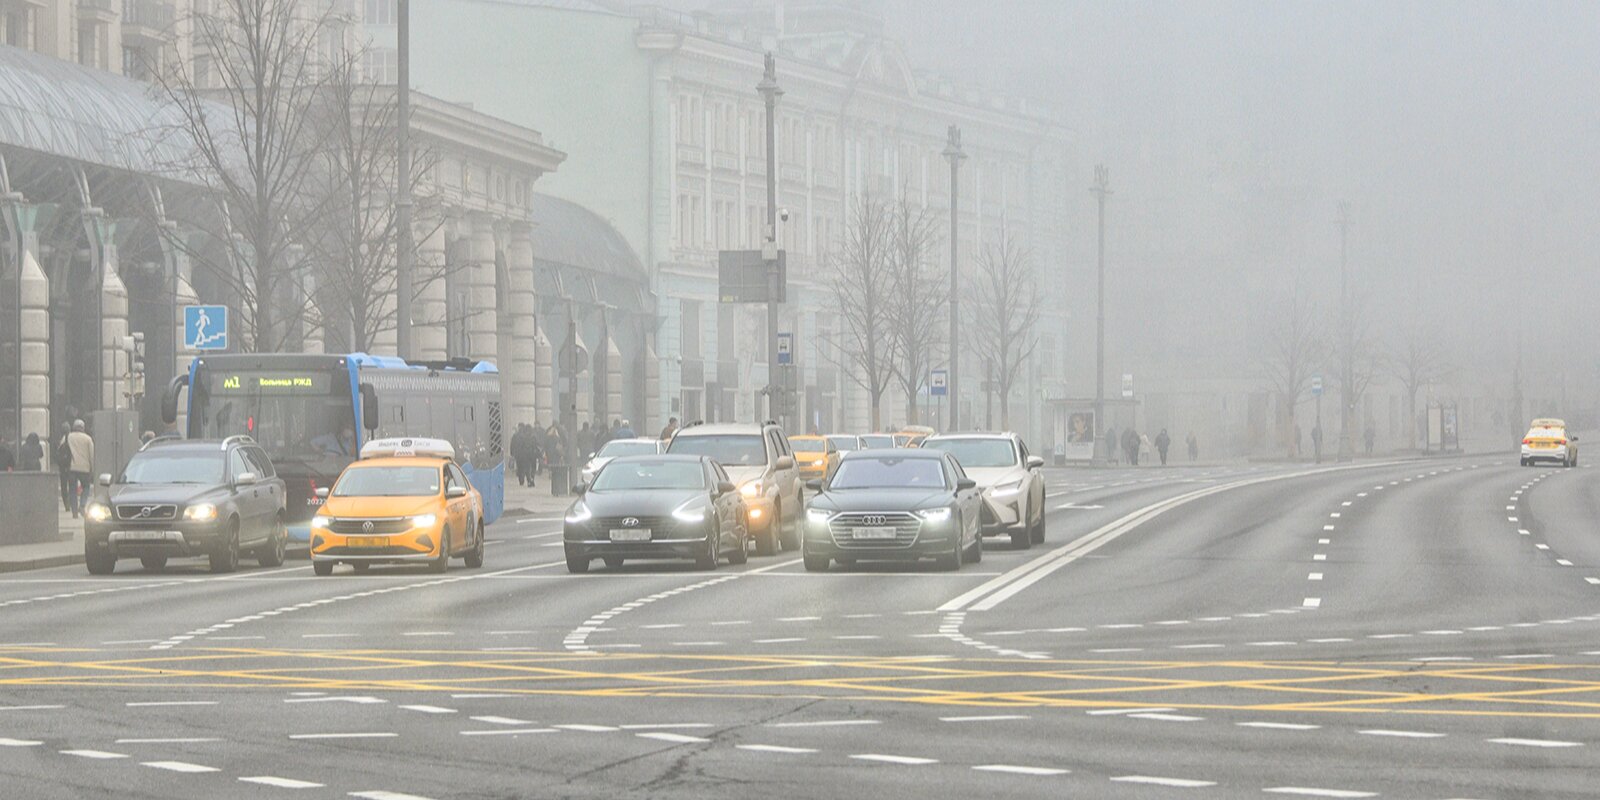 В Москве туман продержится до полуночи